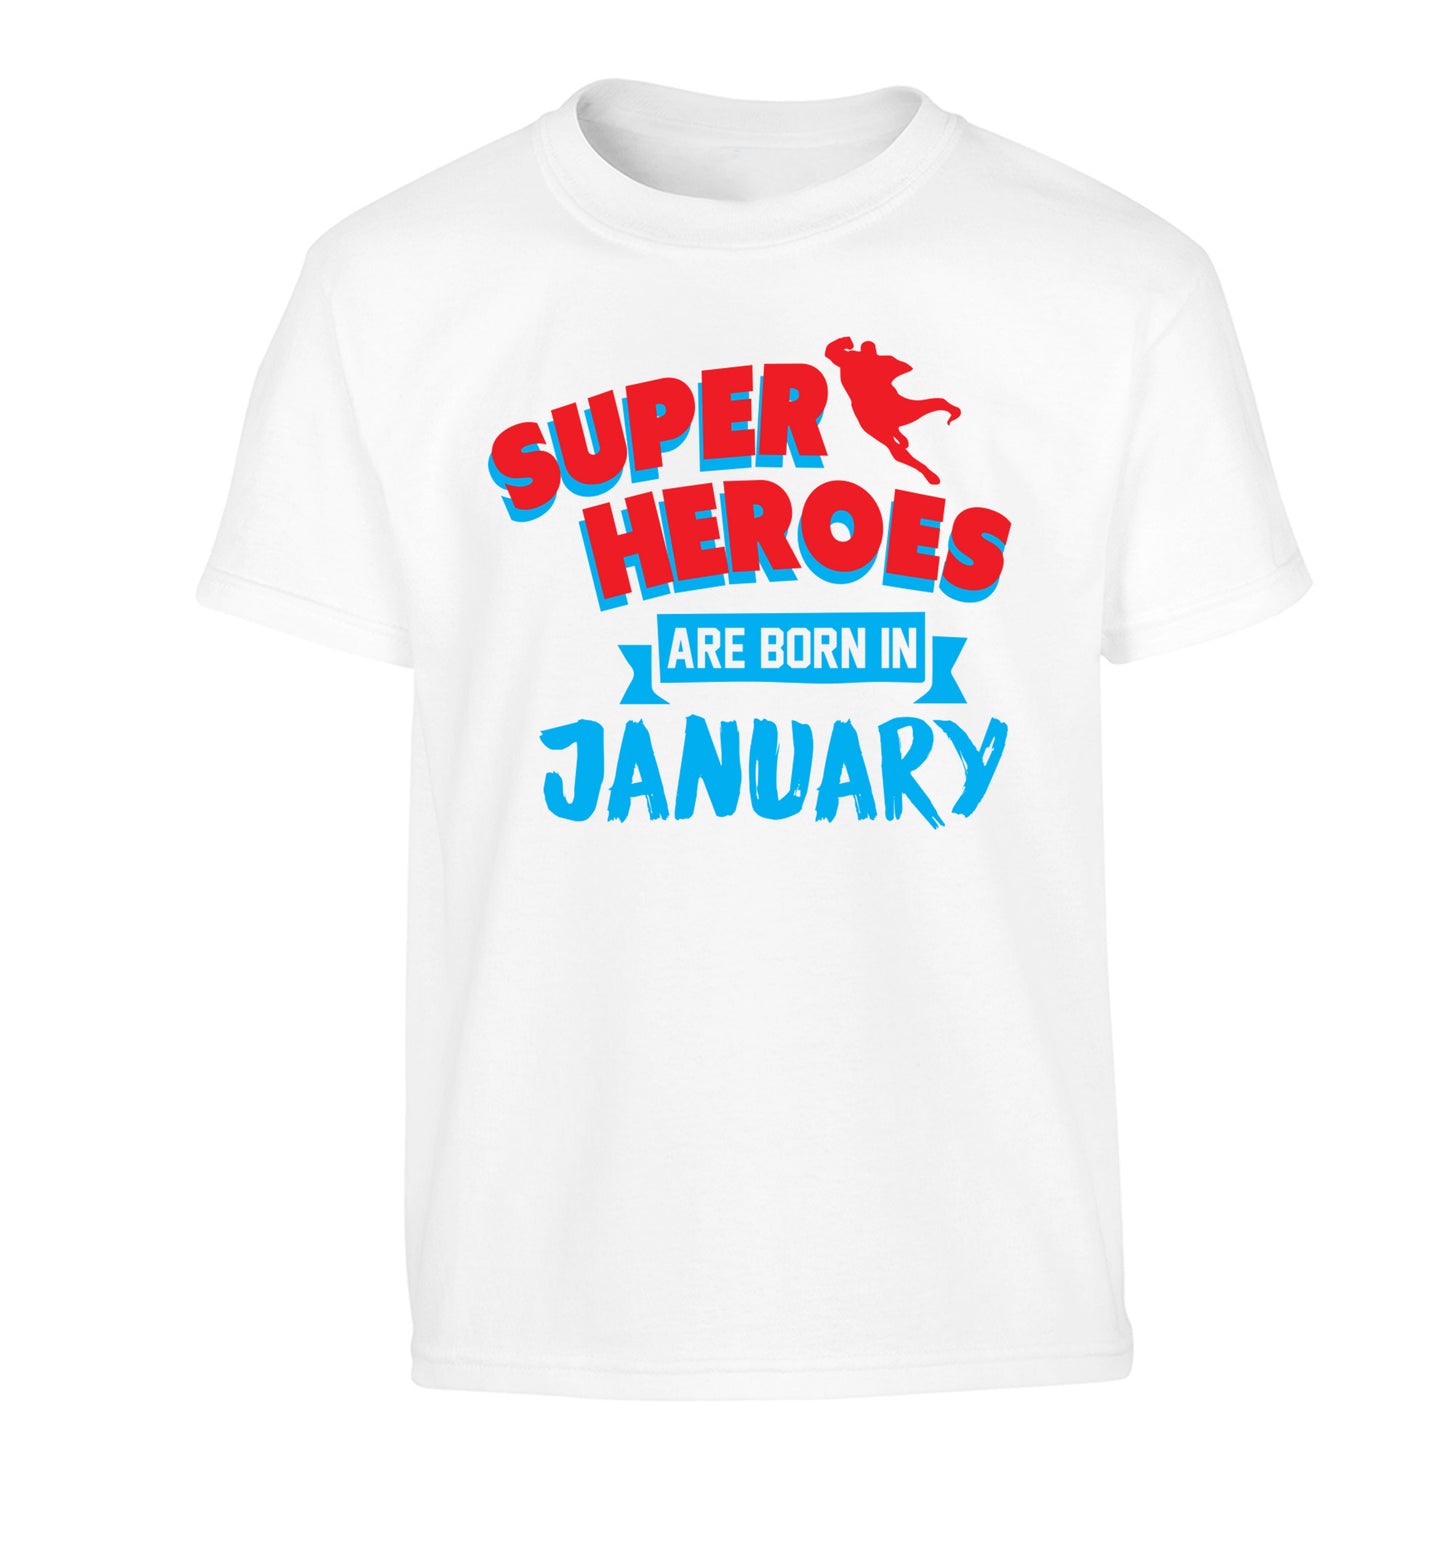 Superheros are born in January Children's white Tshirt 12-13 Years